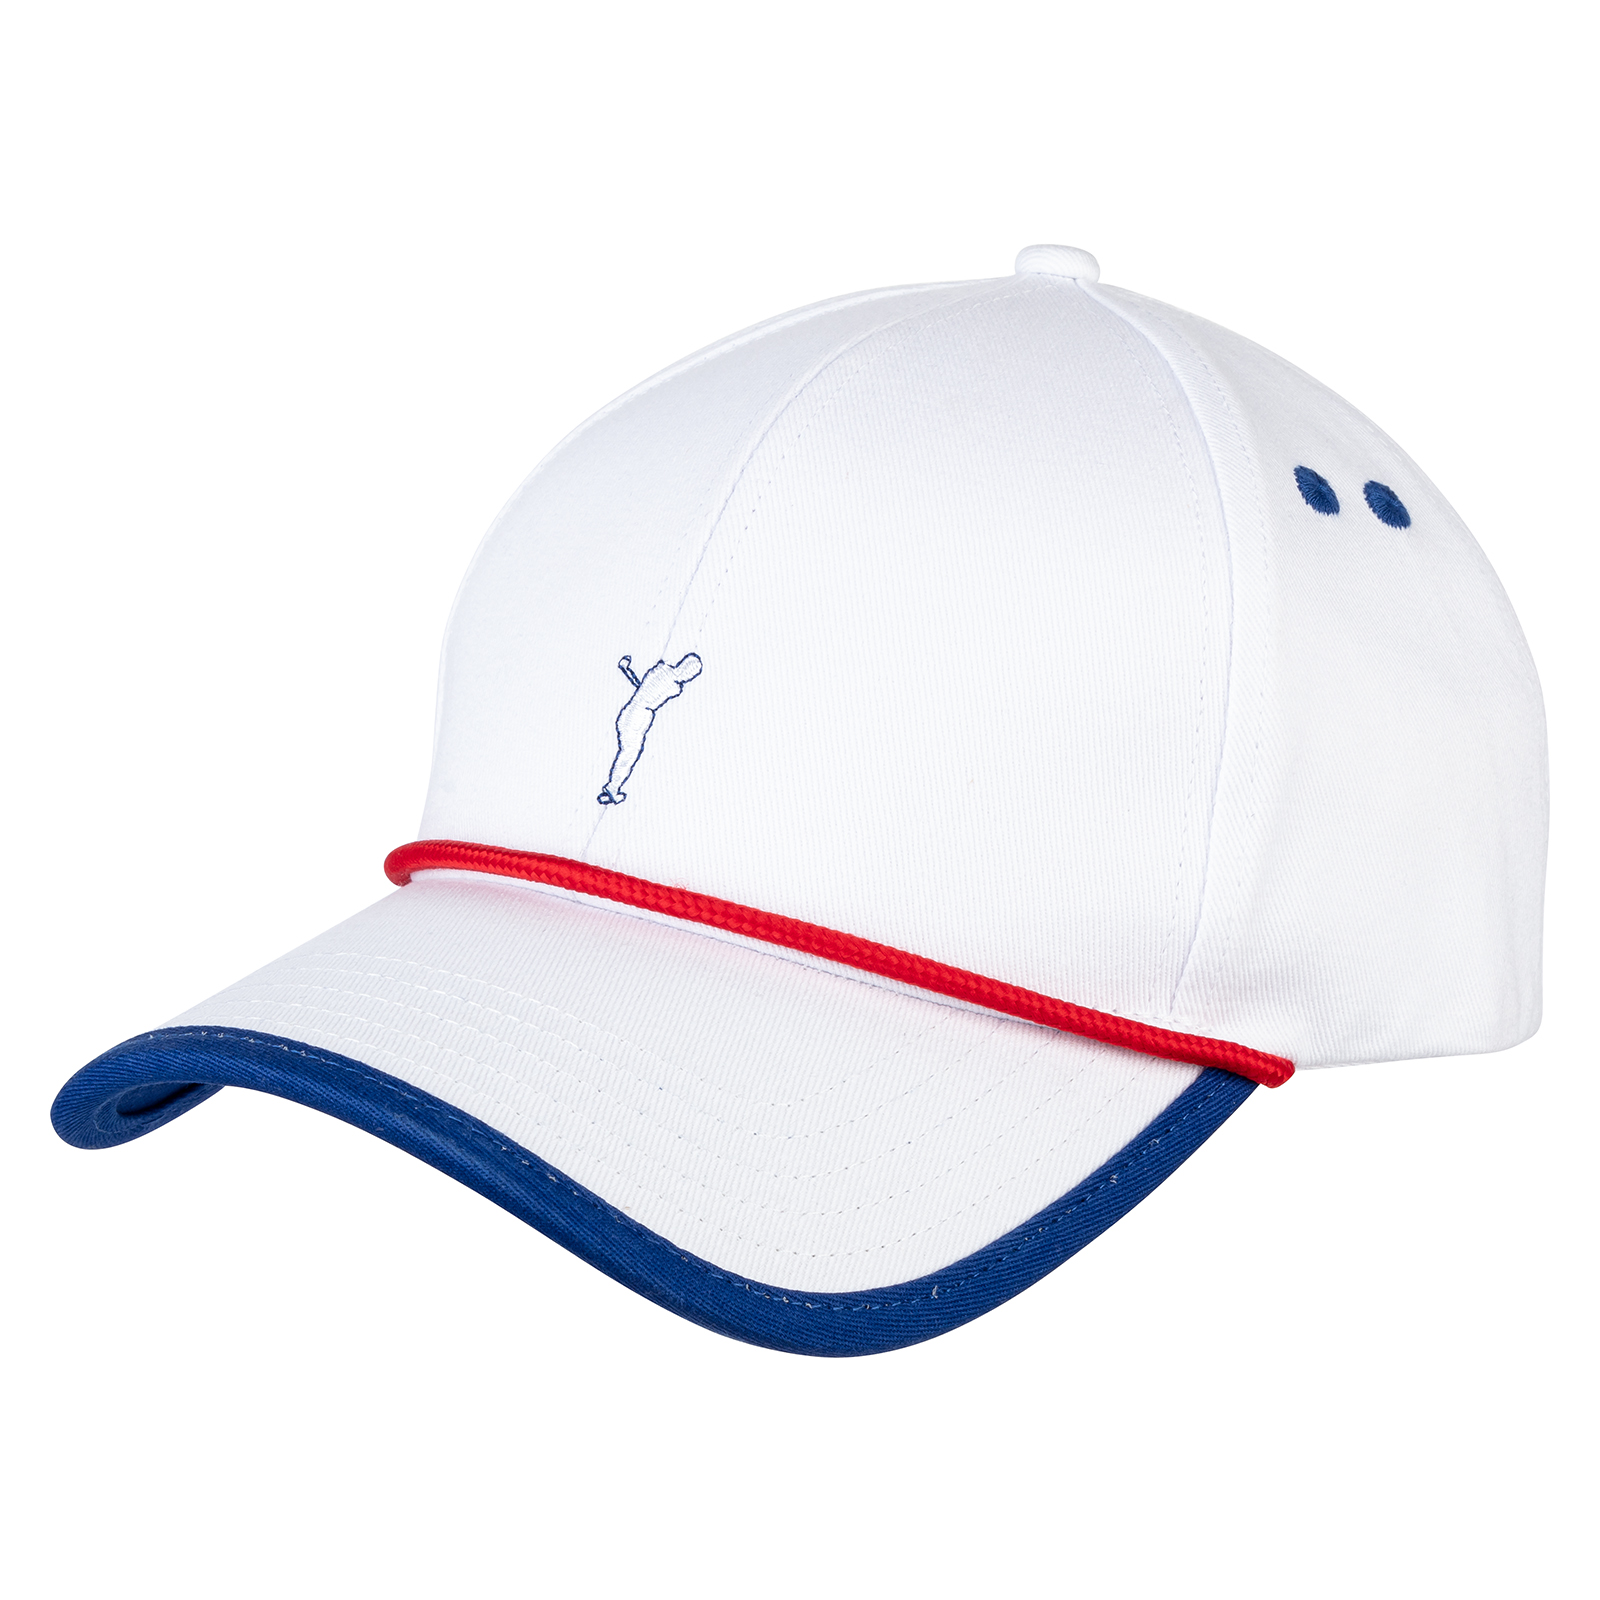 Men's breathable cotton golf cap 